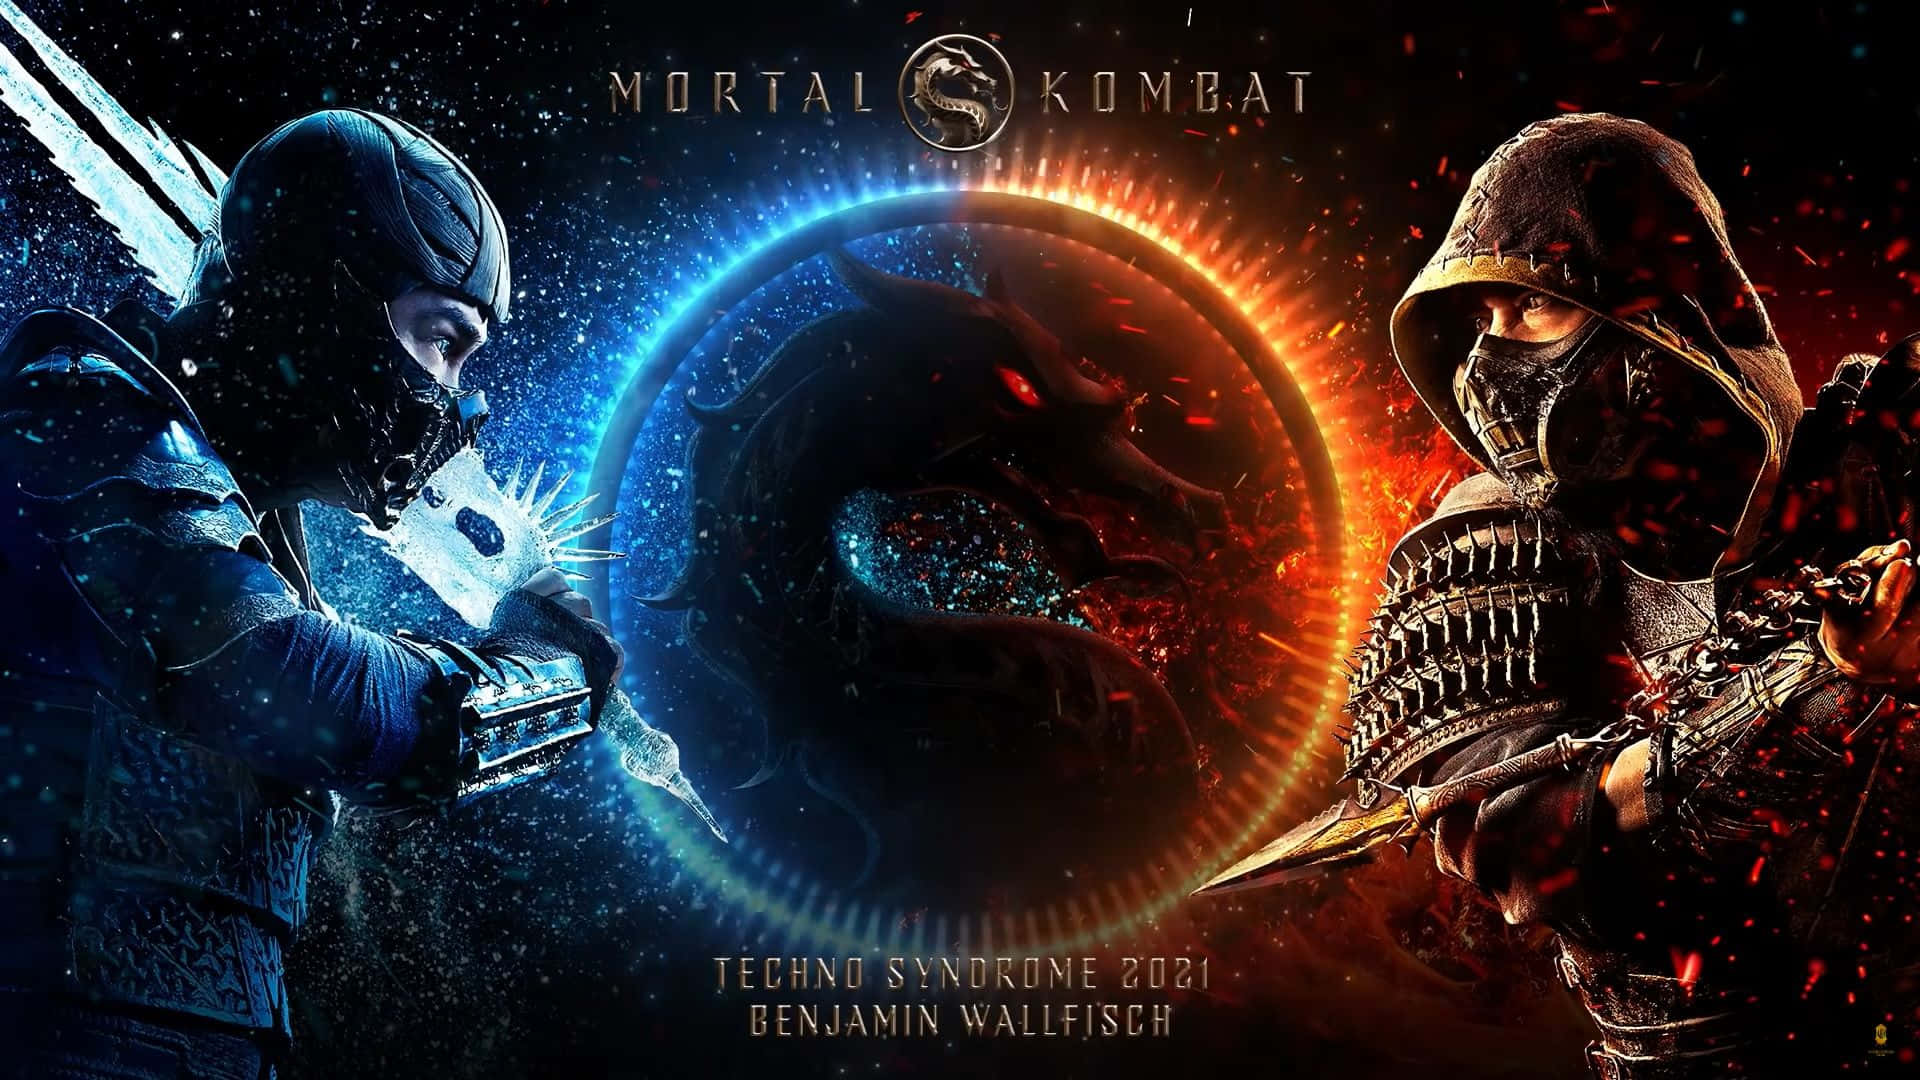 Erlebensie Die Nächste Folge Der Legendären Kampfserie, Während Scorpion 2021 Seinen Thron In Mortal Kombat Zurückerobert. Wallpaper